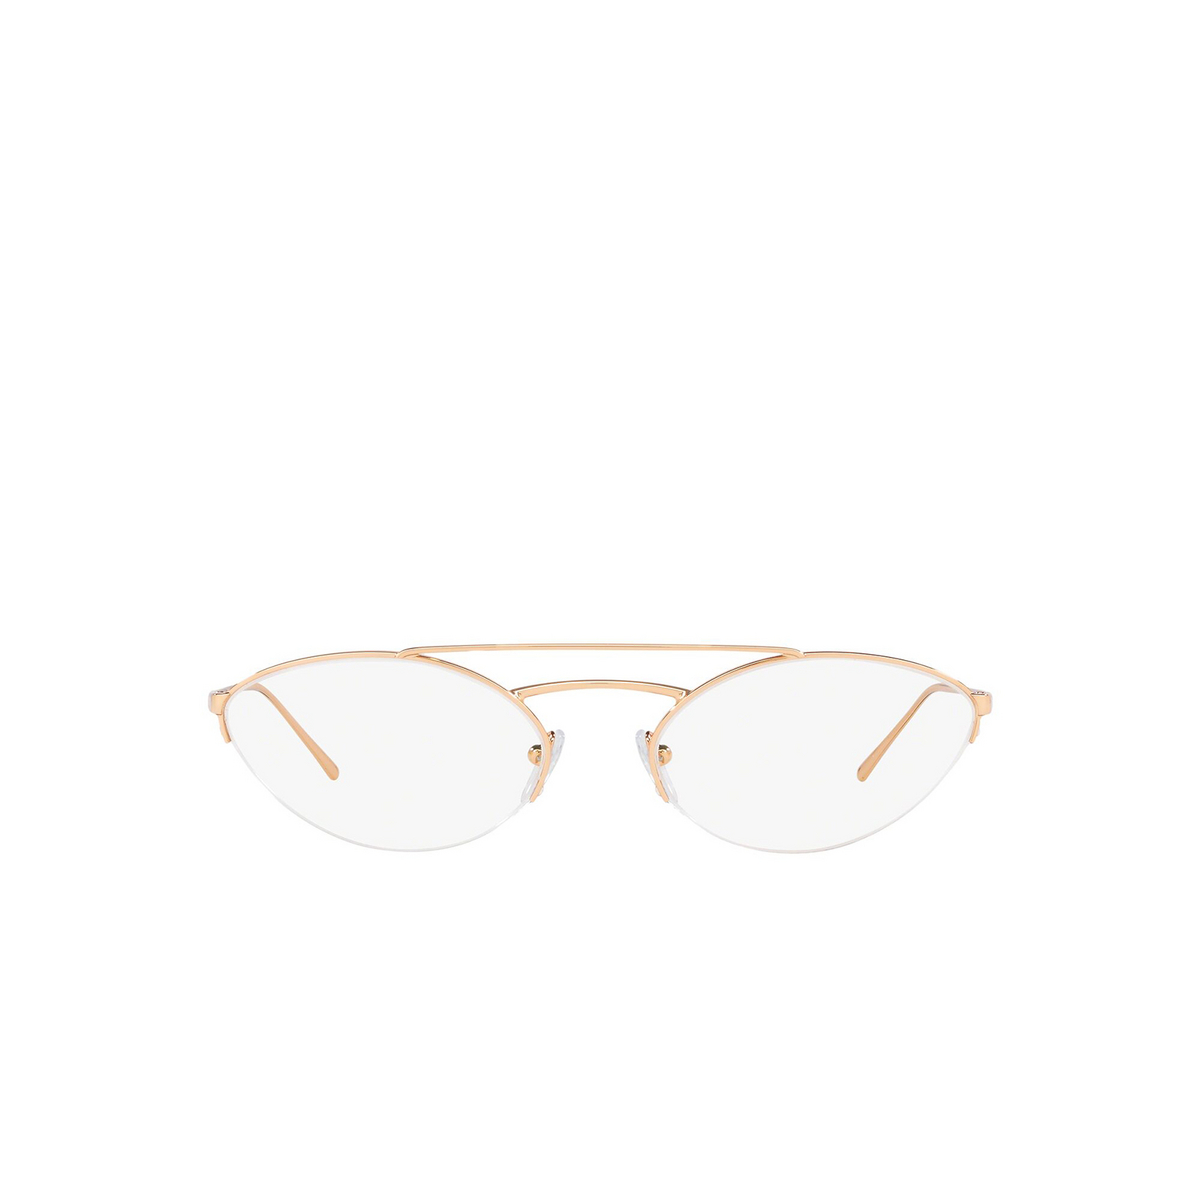 Prada® Oval Eyeglasses: Catwalk PR 62VV color Pink Gold SVF1O1 - front view.